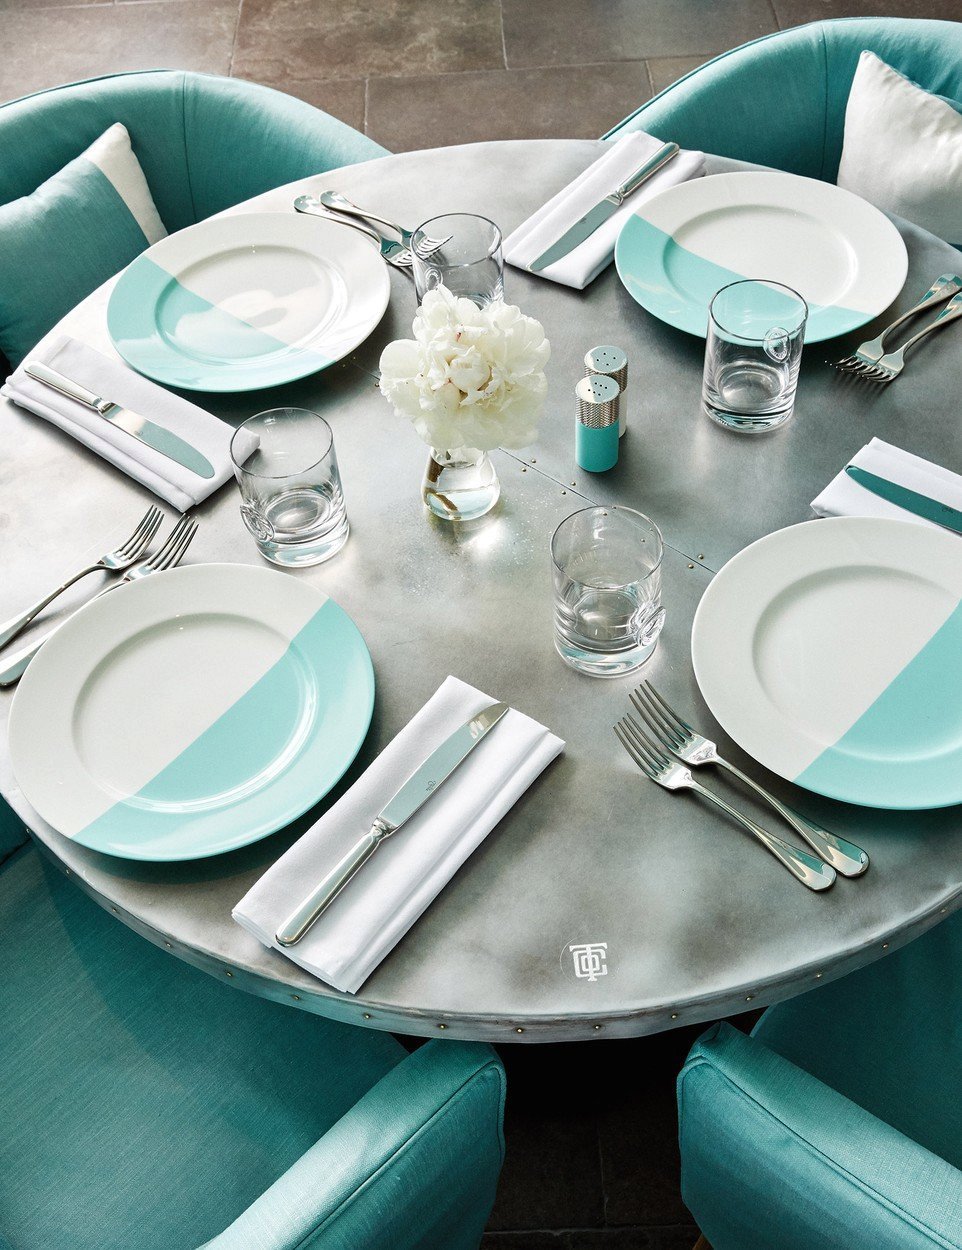 Snídaně u Tiffanyho za 638 korun! Klenotnictví otevřelo luxusní restauraci v New Yorku.